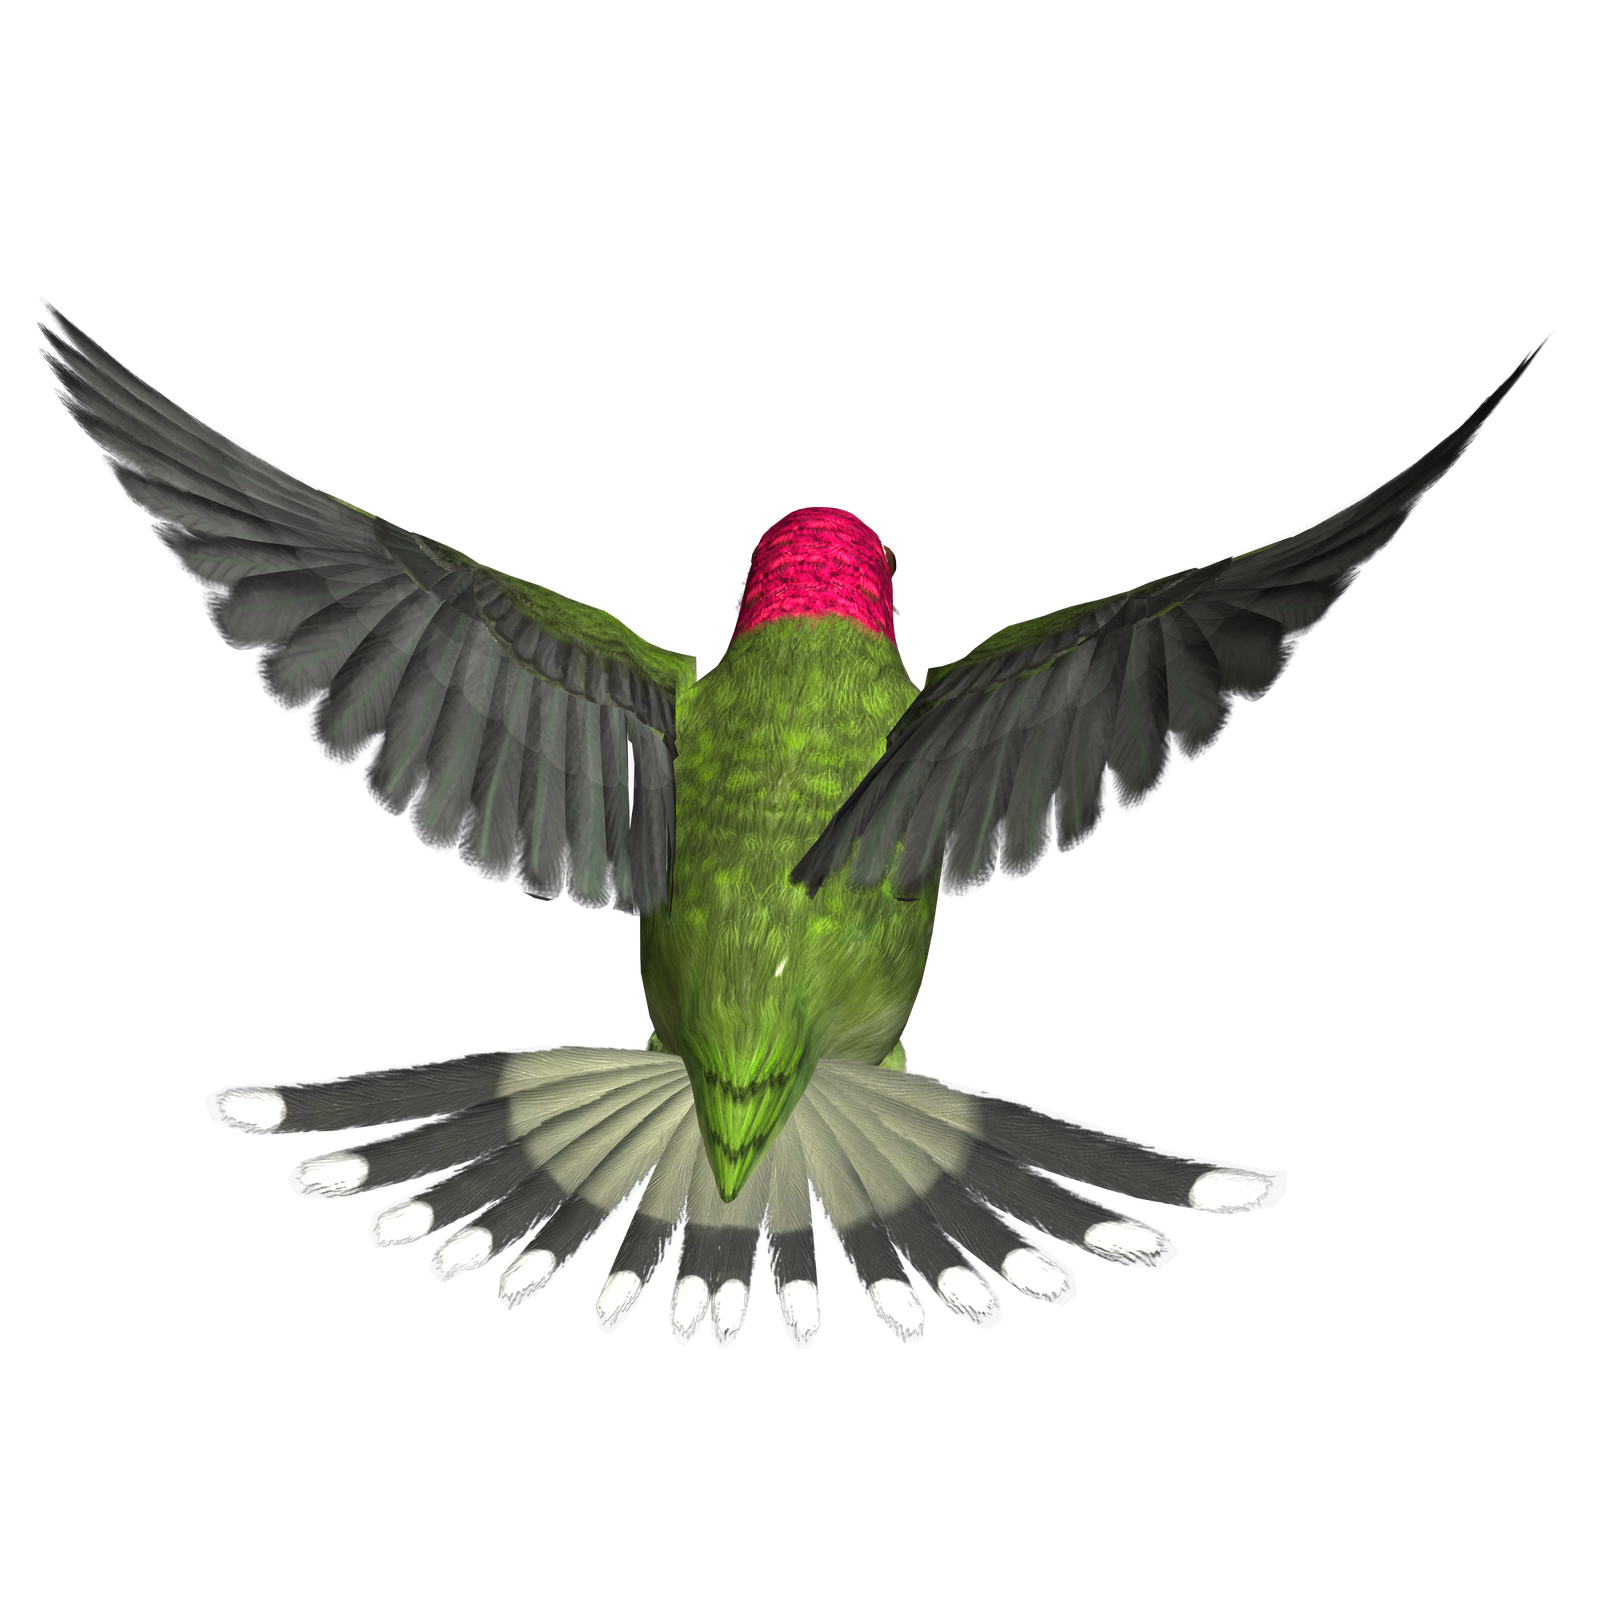 Hummingbird clipart beautiful bird. Png transparent images all